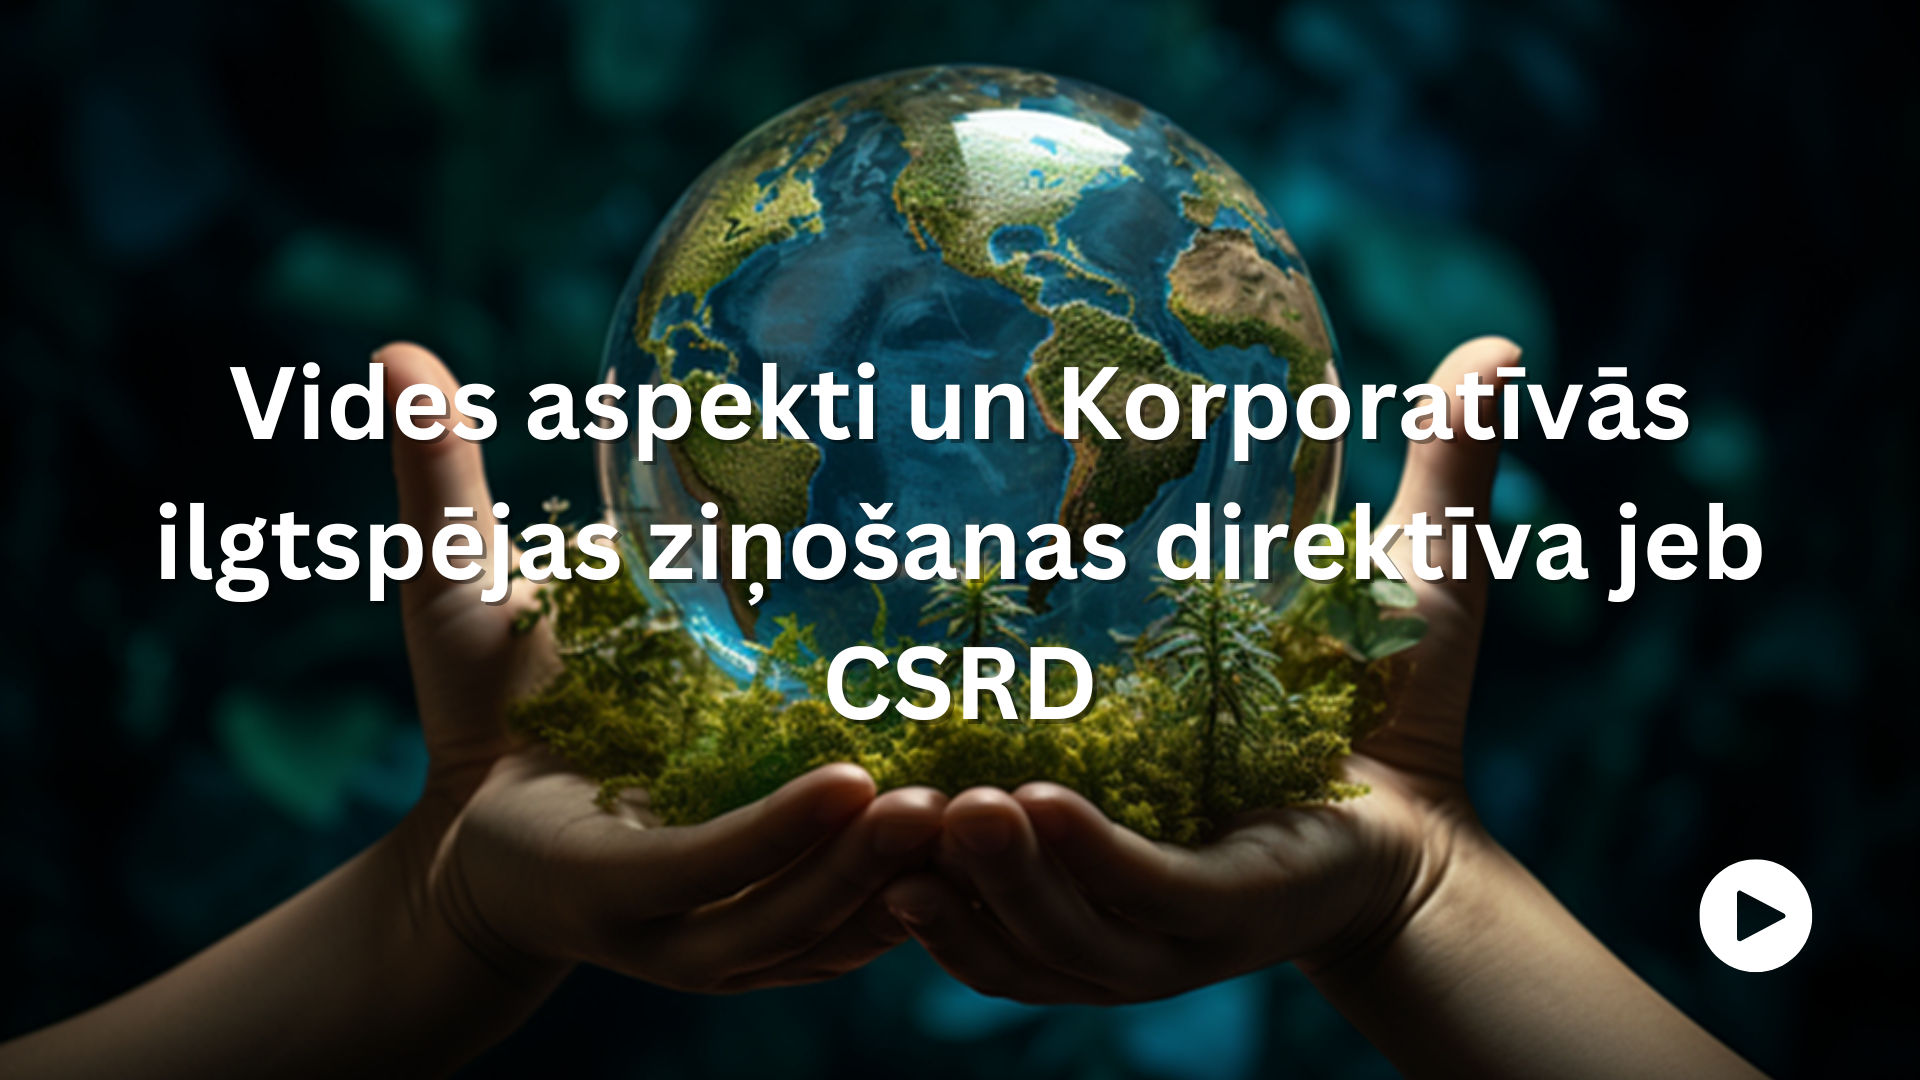 Vides aspekti  un Korporatīvās ilgtspējas ziņošanas direktīva jeb CSRD. Attēlā cilvēks plaukstās tur stikla lodi, kas simbolizē zemeslodi